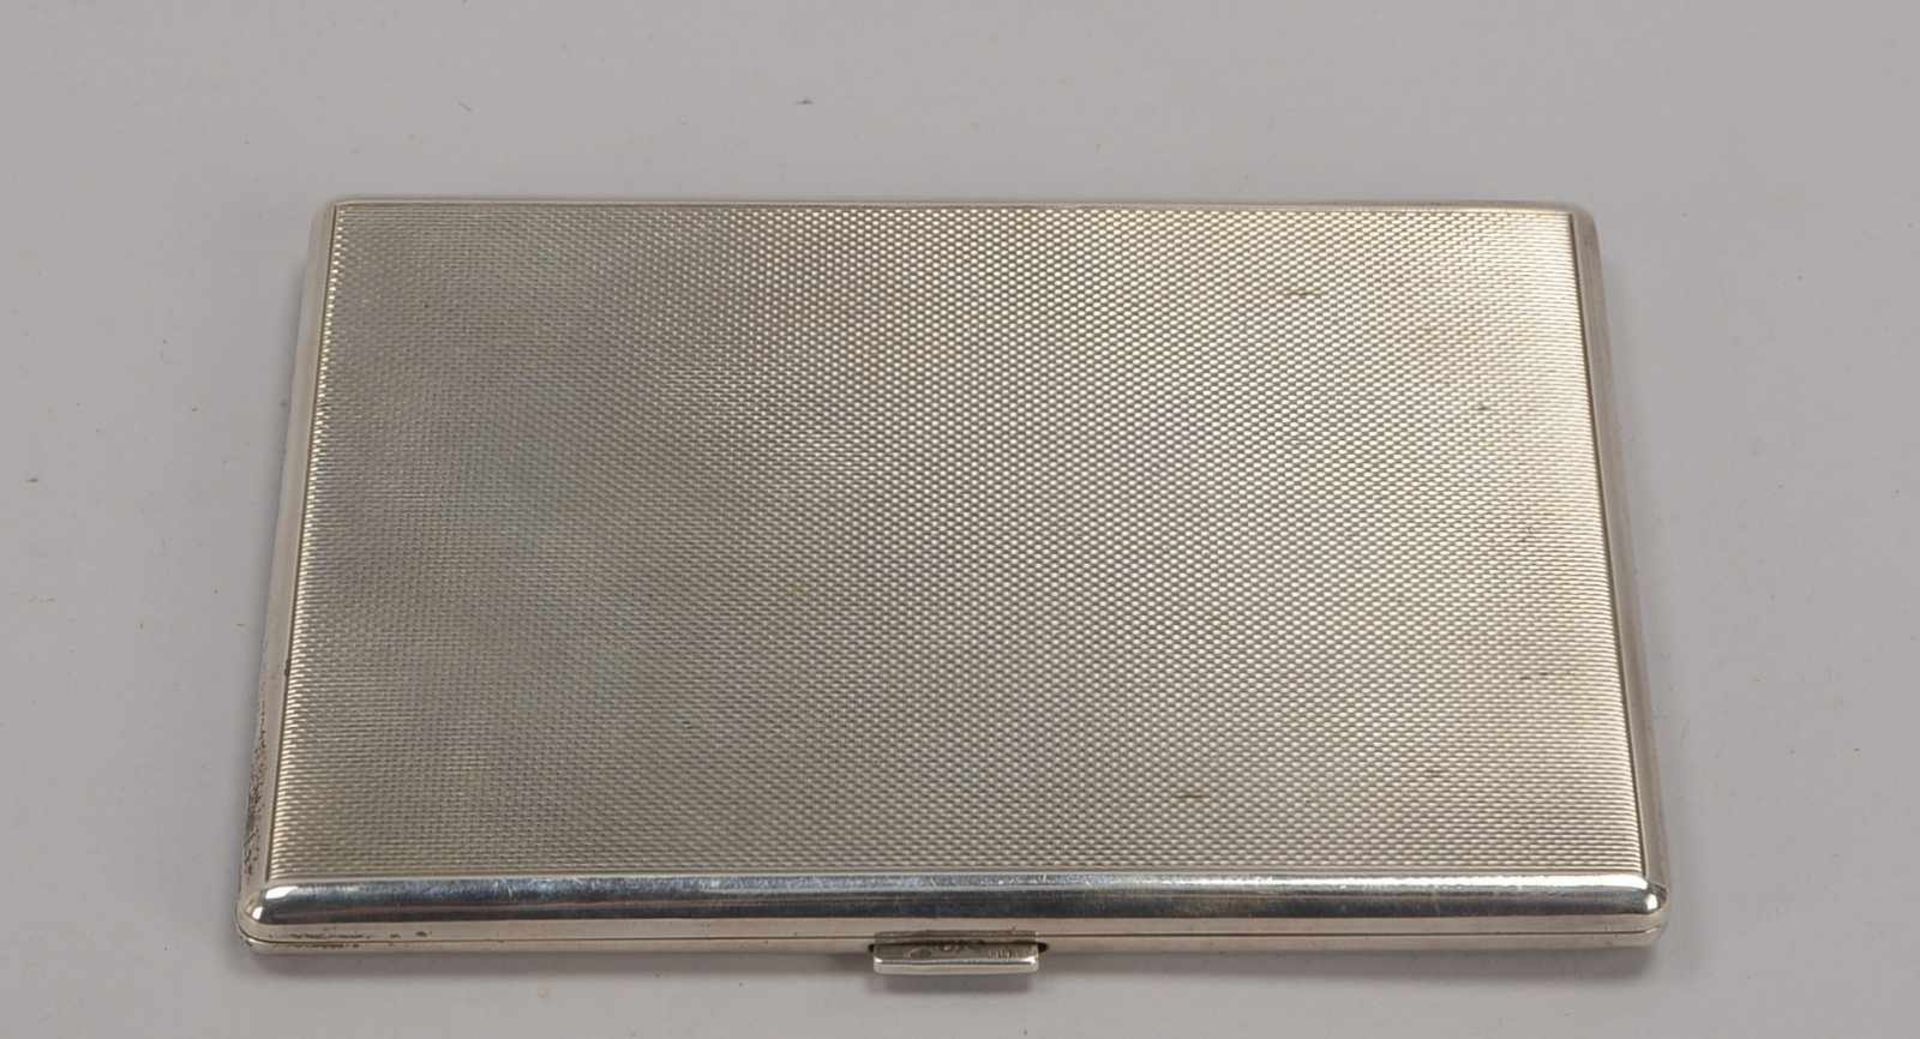 Zigaretten-/Zigarillo-Etui, 800 Silber; Maße 12,5 x 9,5 x 0,7 cm, Gewicht 154 g